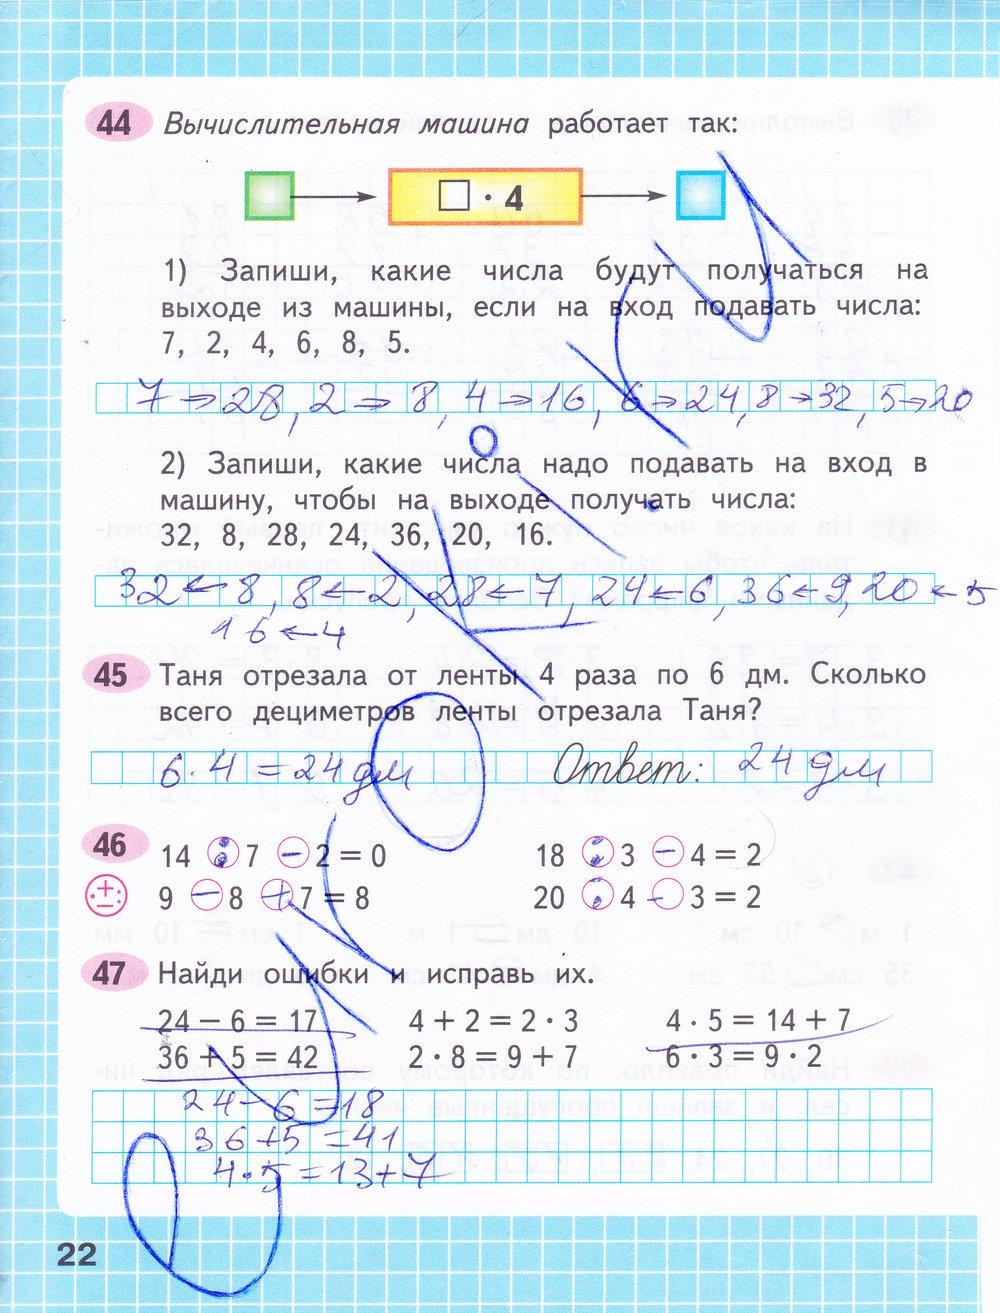 Математика рабочая тетрадь страница 45 ответ. Математика 3 класс 1 часть рабочая тетрадь стр 22-23.